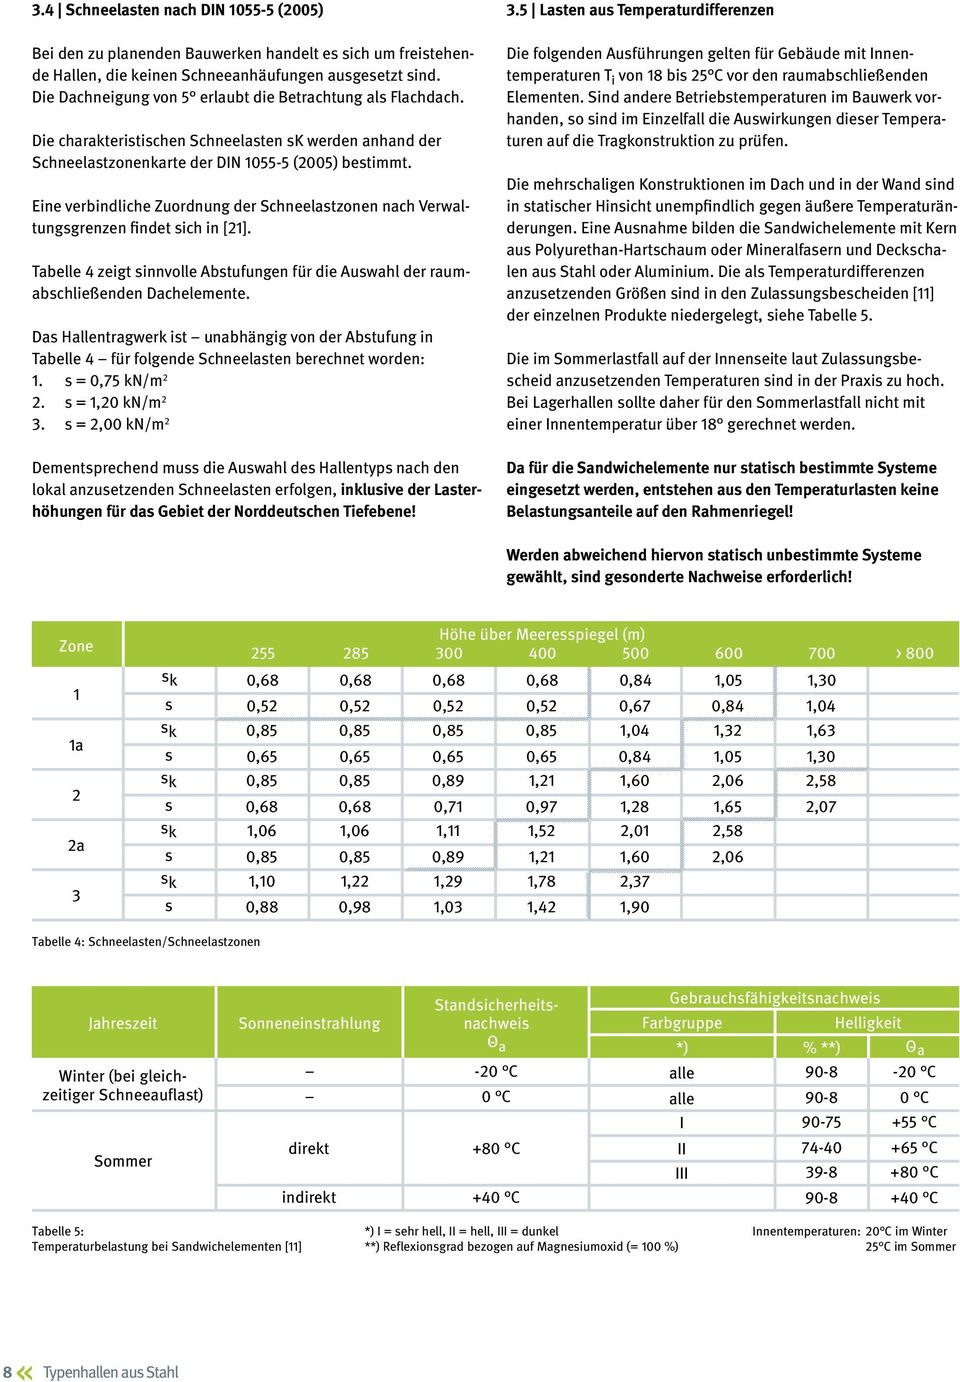 Eine verbindliche Zuordnung der Schneelastzonen nach Verwaltungsgrenzen findet sich in [21]. Tabelle 4 zeigt sinnvolle Abstufungen für die Auswahl der raumabschließenden Dachelemente.